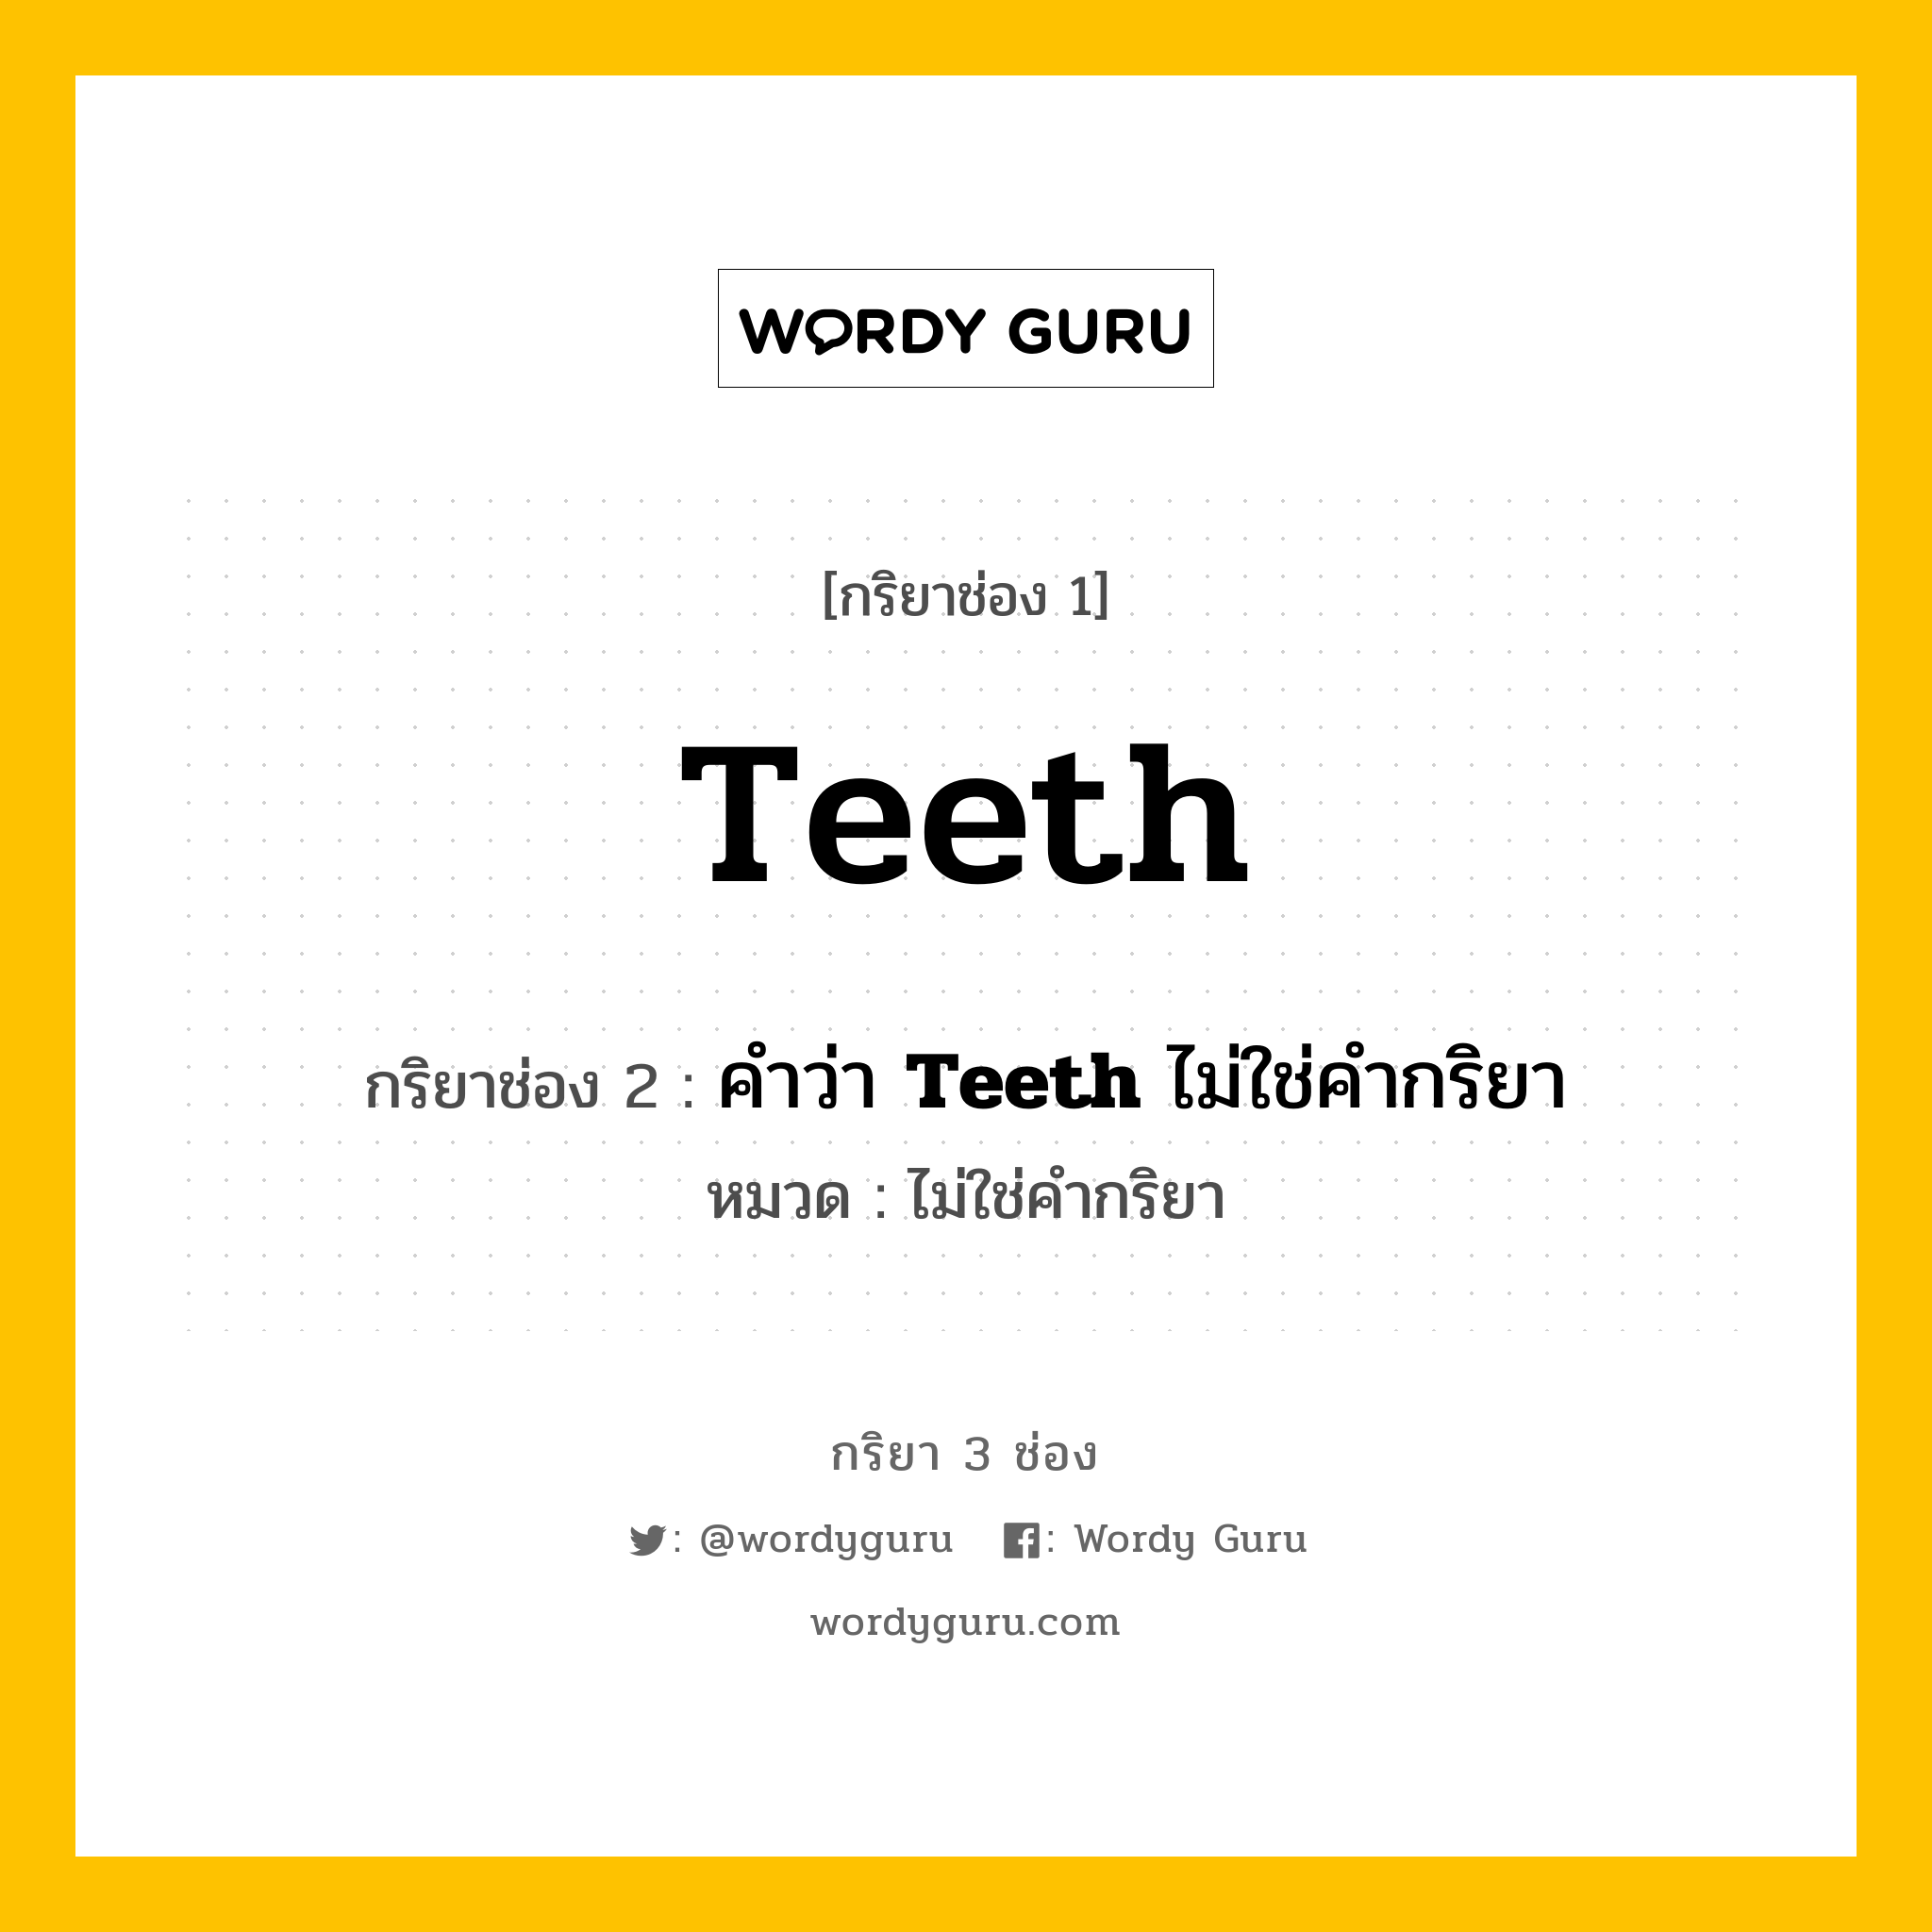 กริยา 3 ช่อง ของ Teeth คืออะไร?, กริยาช่อง 1 Teeth กริยาช่อง 2 คำว่า <b>Teeth</b> ไม่ใช่คำกริยา หมวด ไม่ใช่คำกริยา หมวด ไม่ใช่คำกริยา